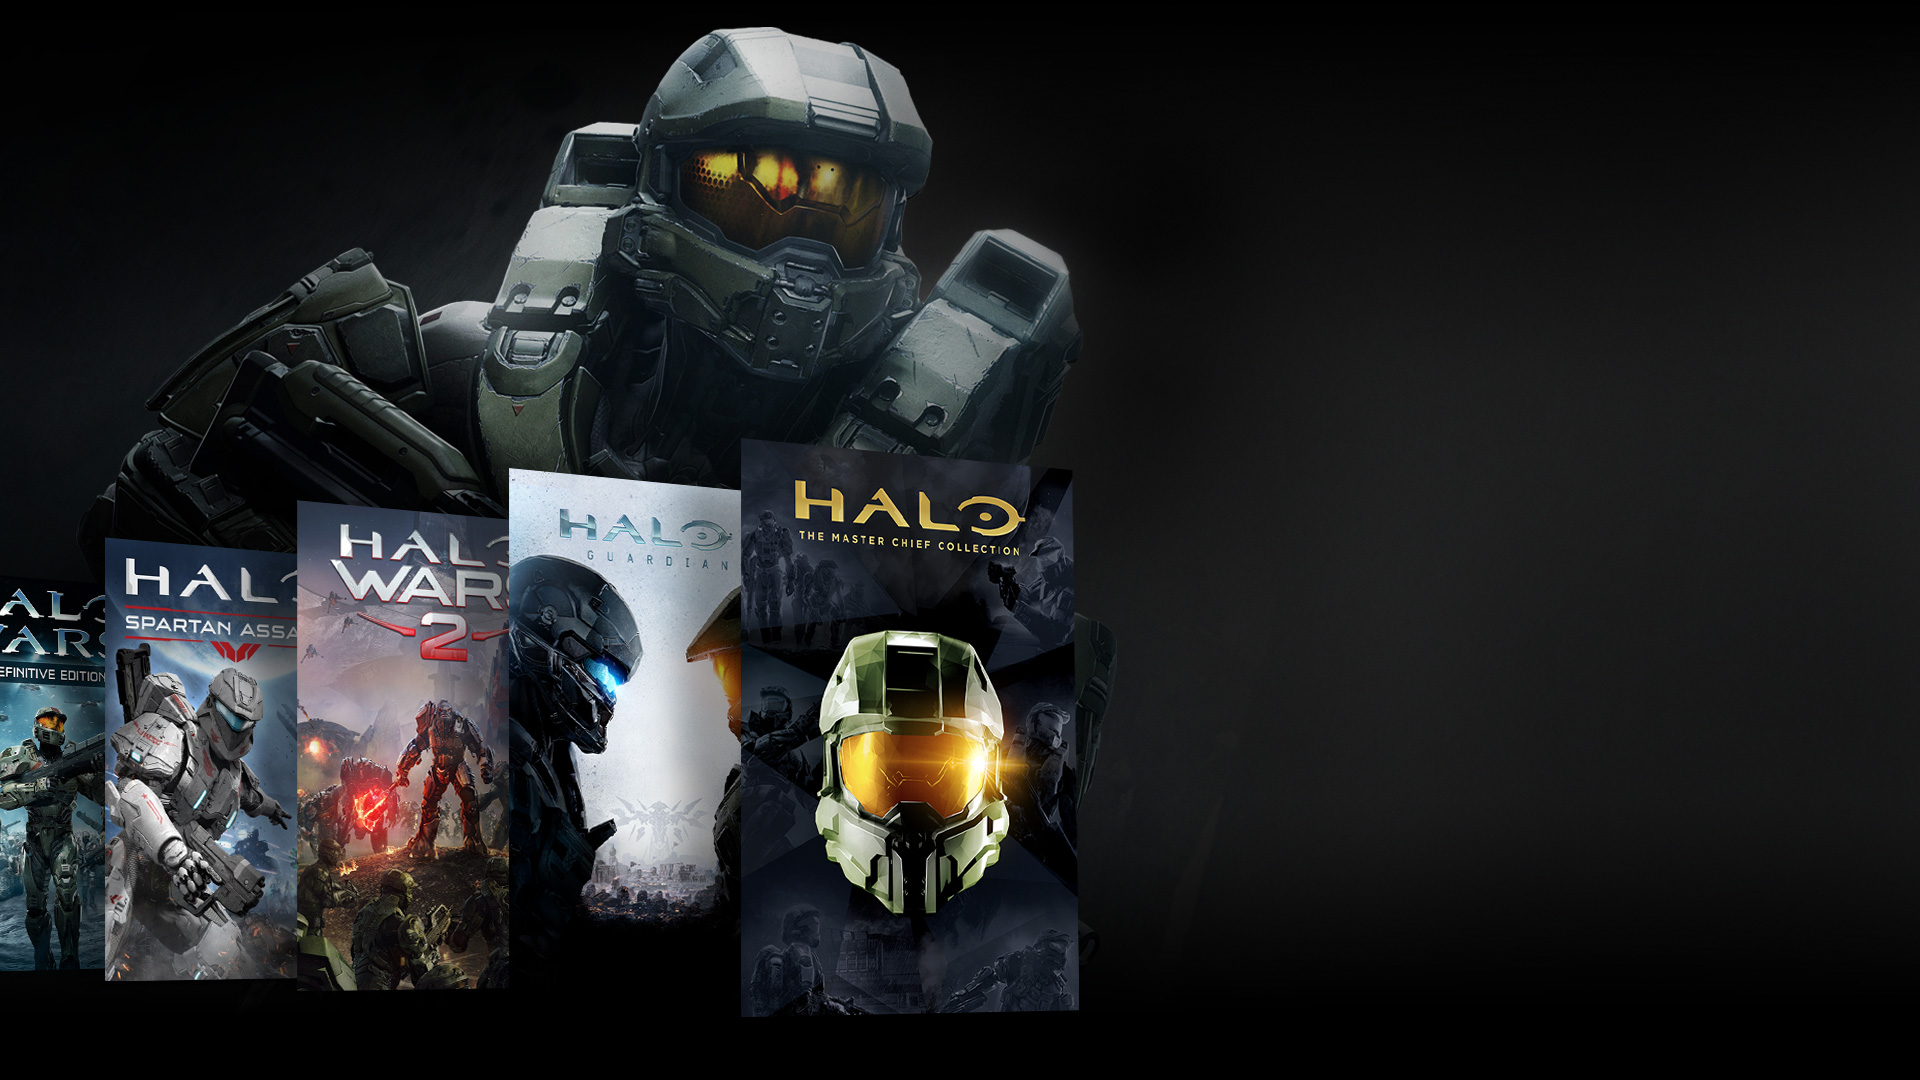 Vooraanzicht van Halo-karakter dat achter een collage van Halo-games staat